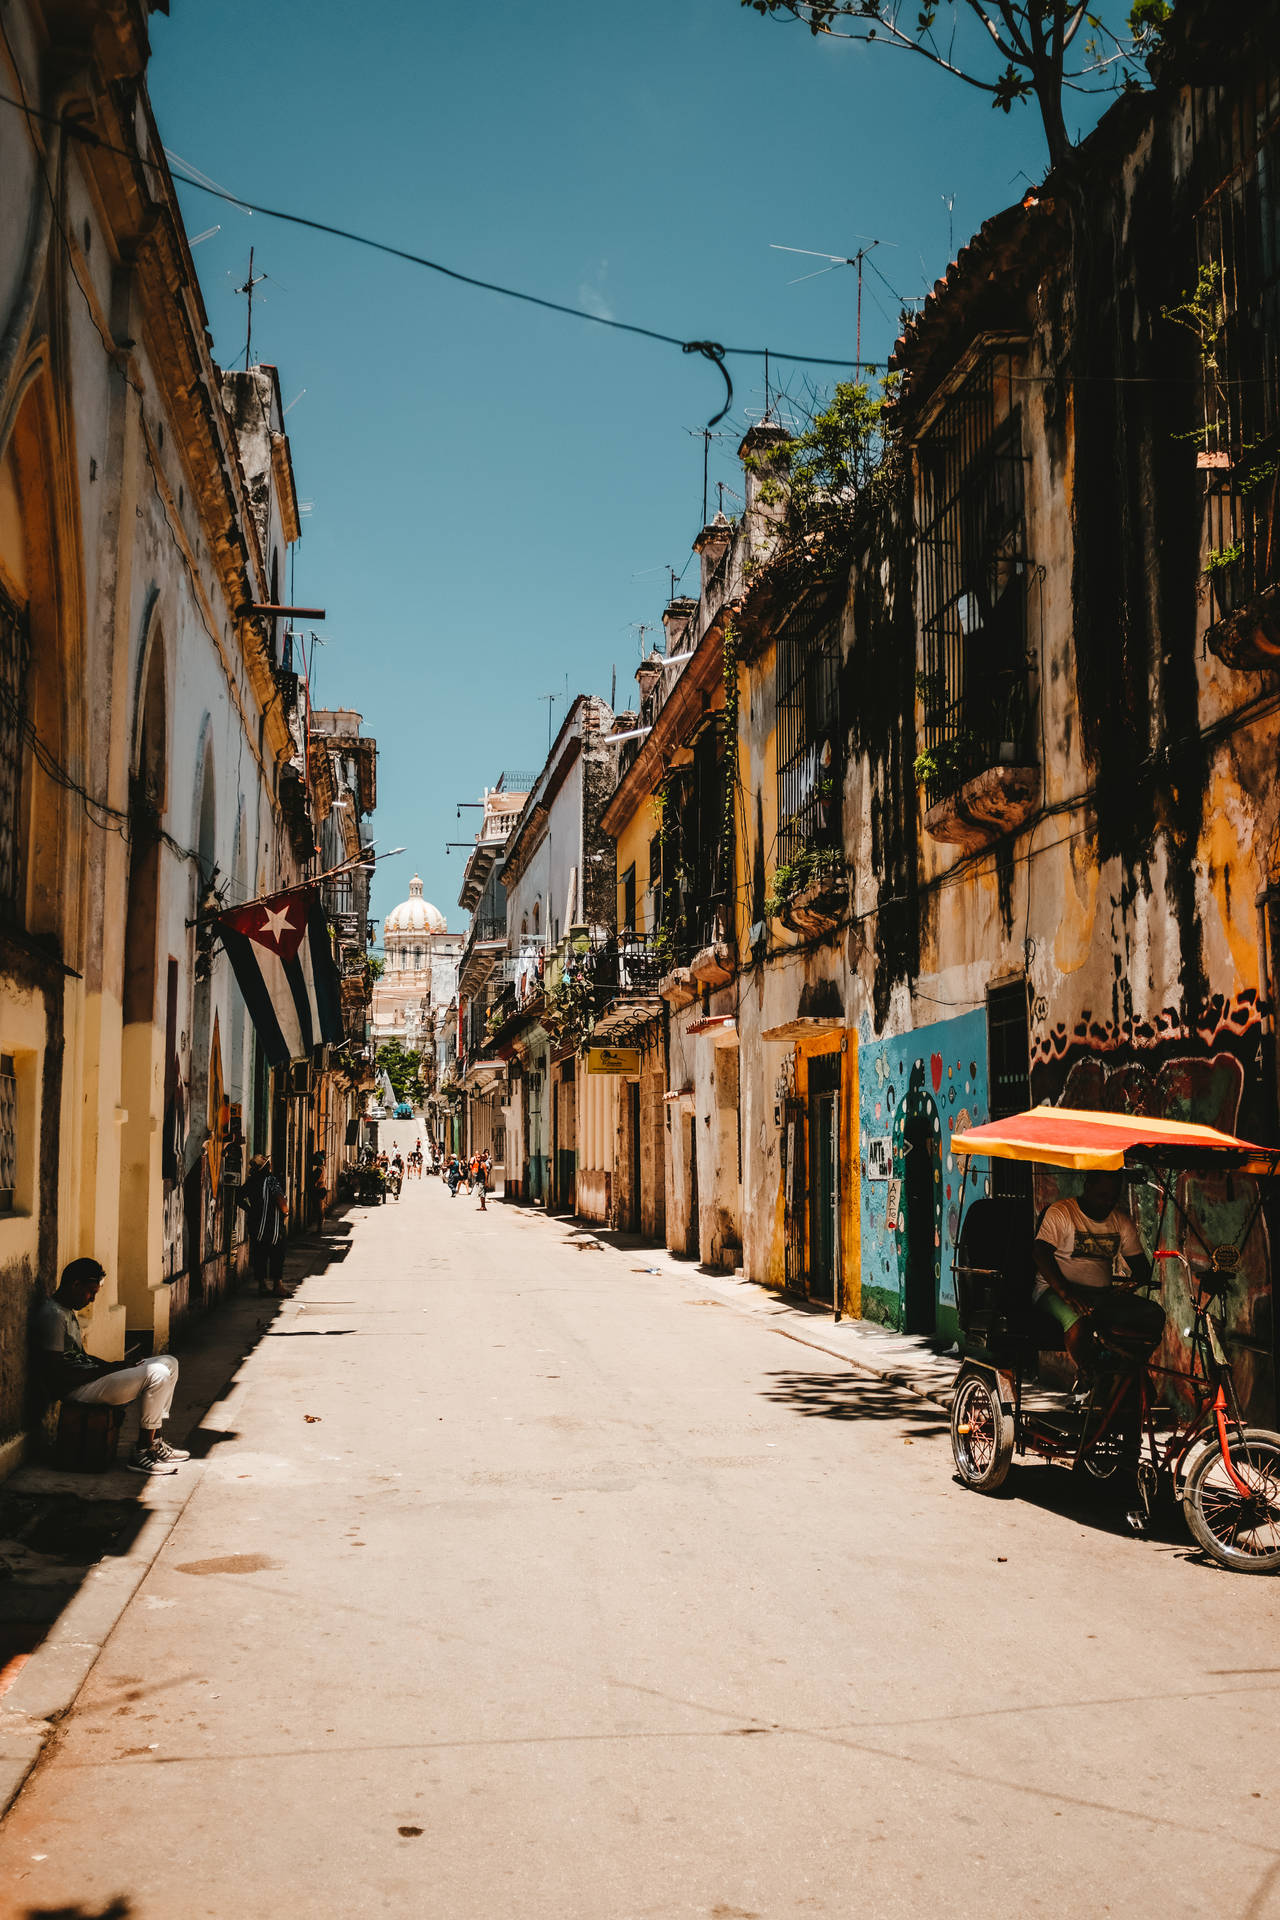 Empty Street In Cuba Wallpaper